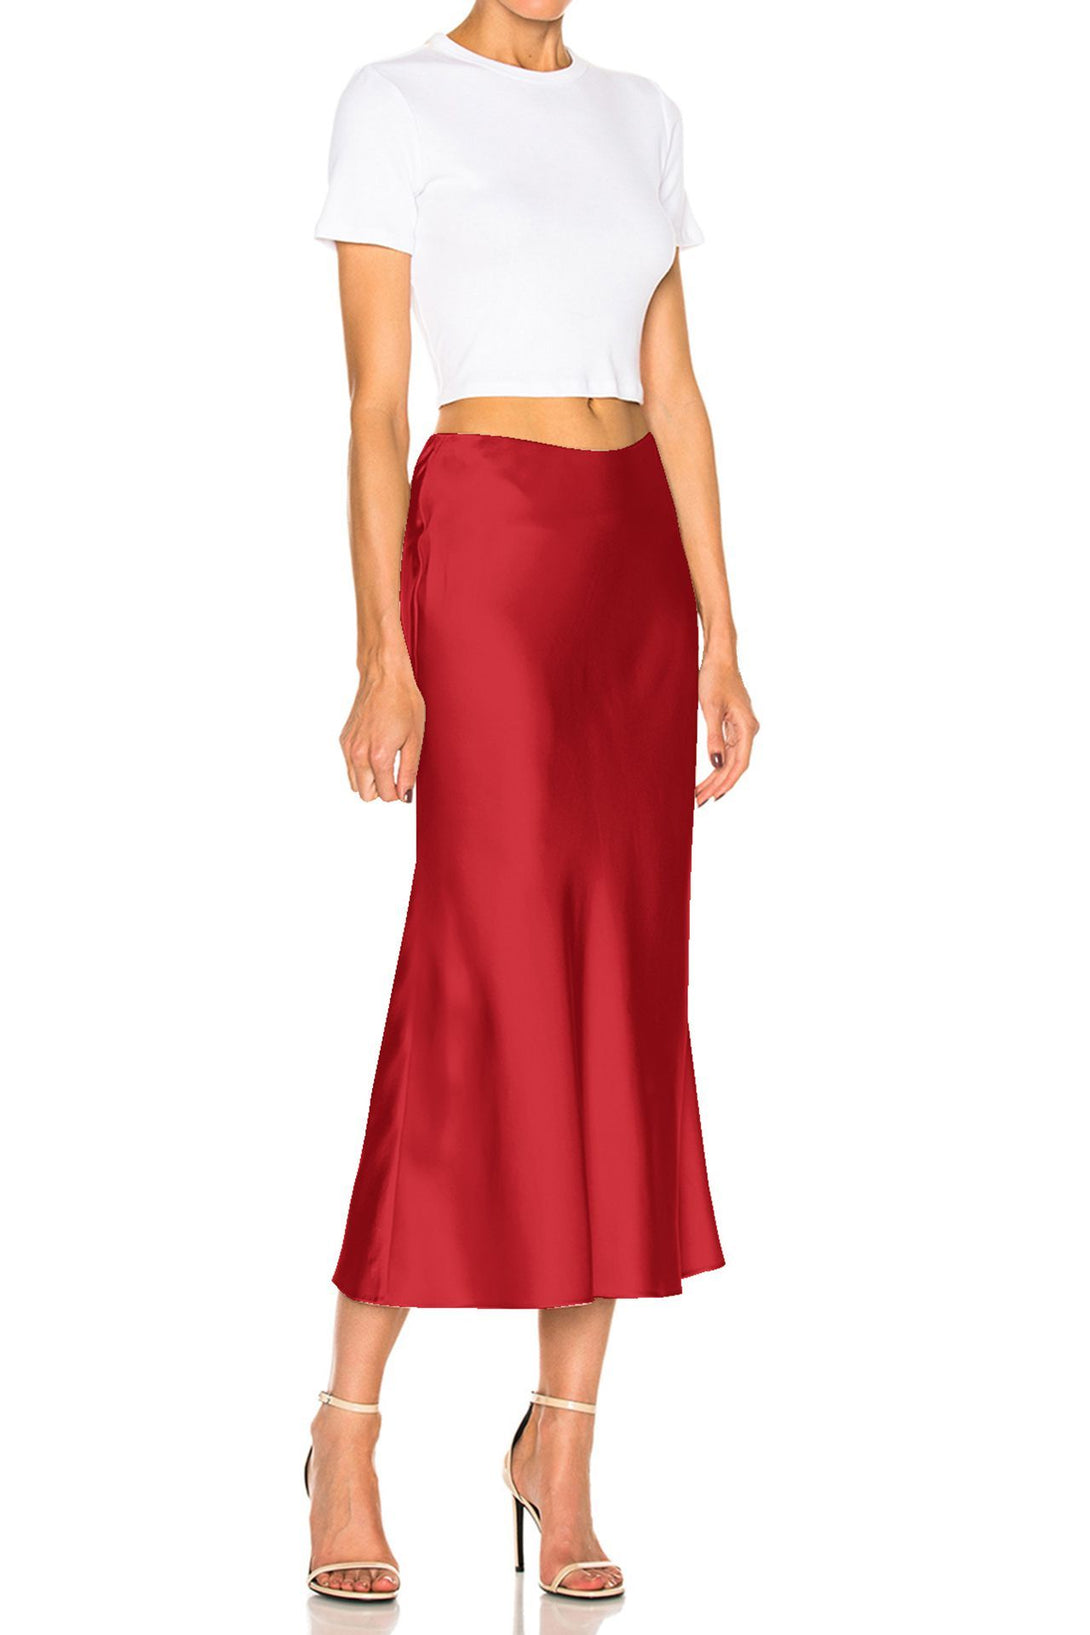 Women-Designer-Red-Skirt-By-Kyle-Richard